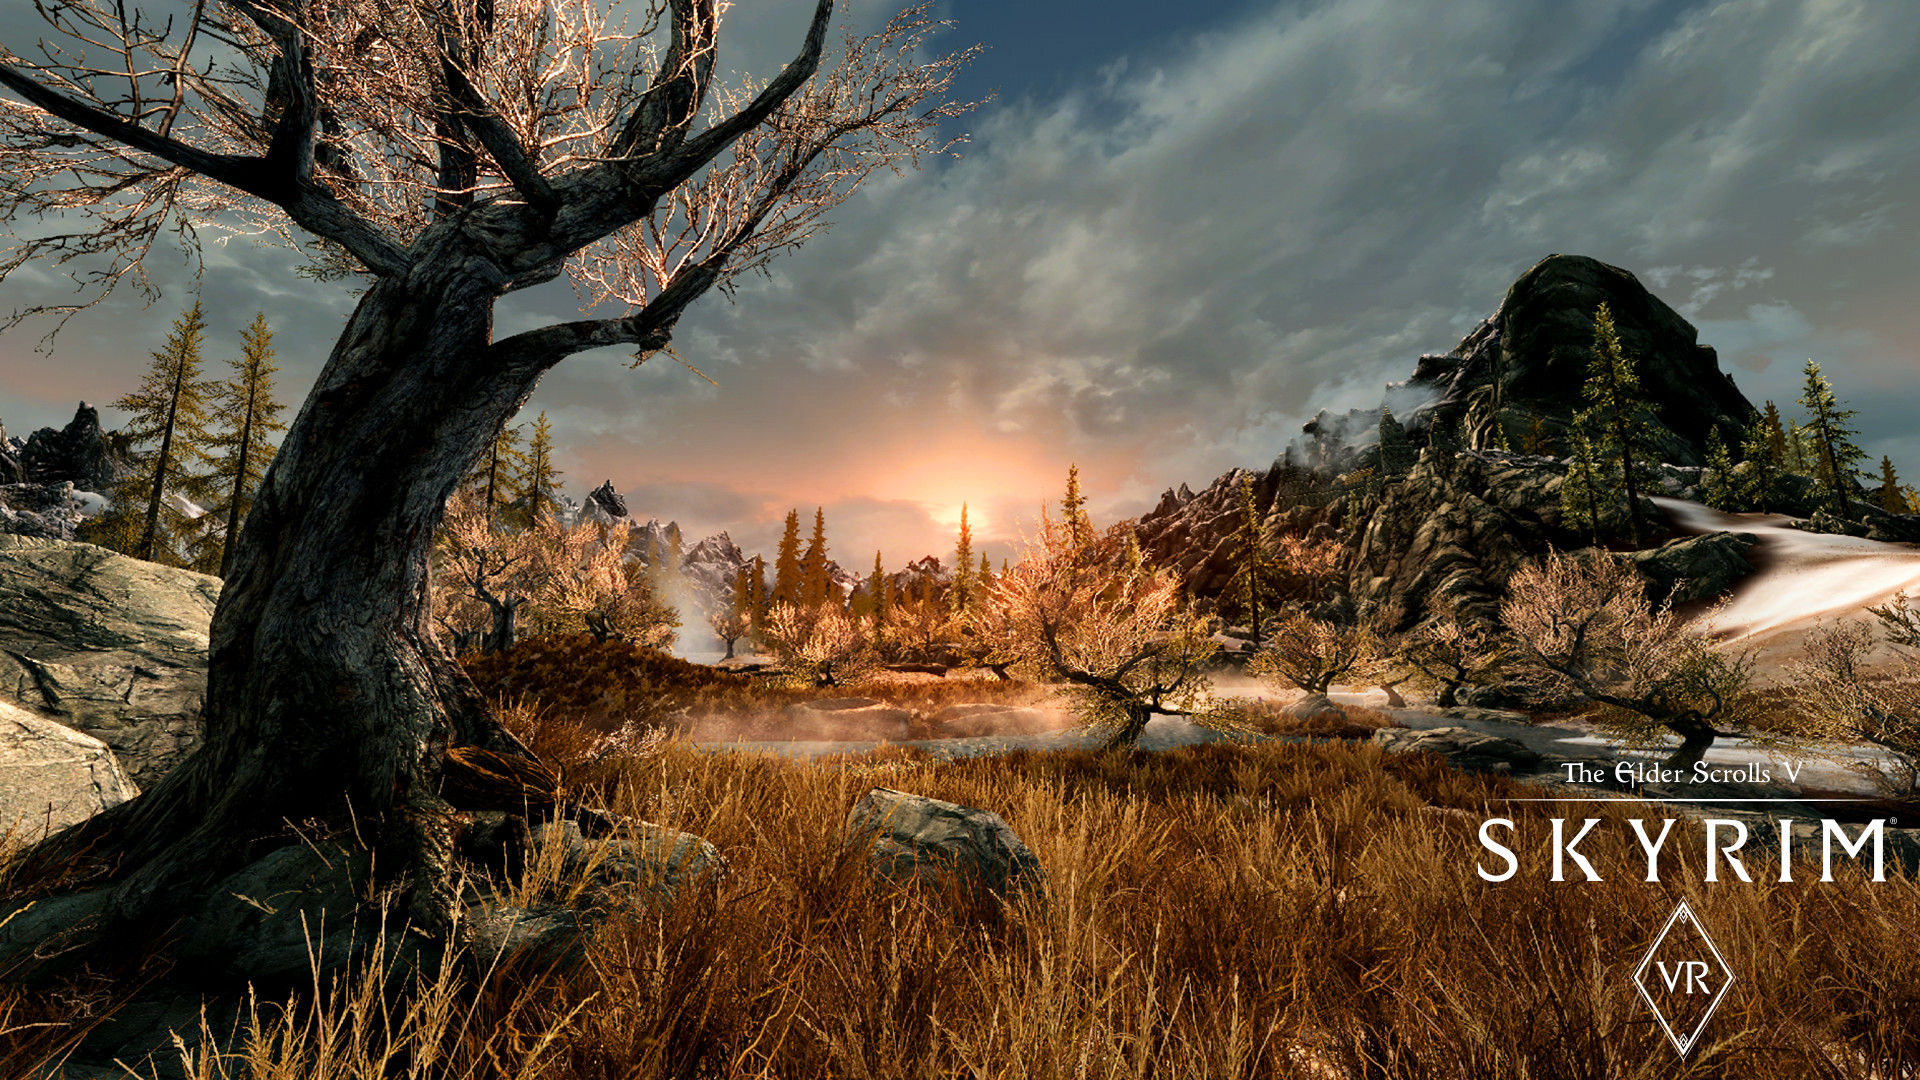 The Elder Scrolls V: Skyrim VR en Steam